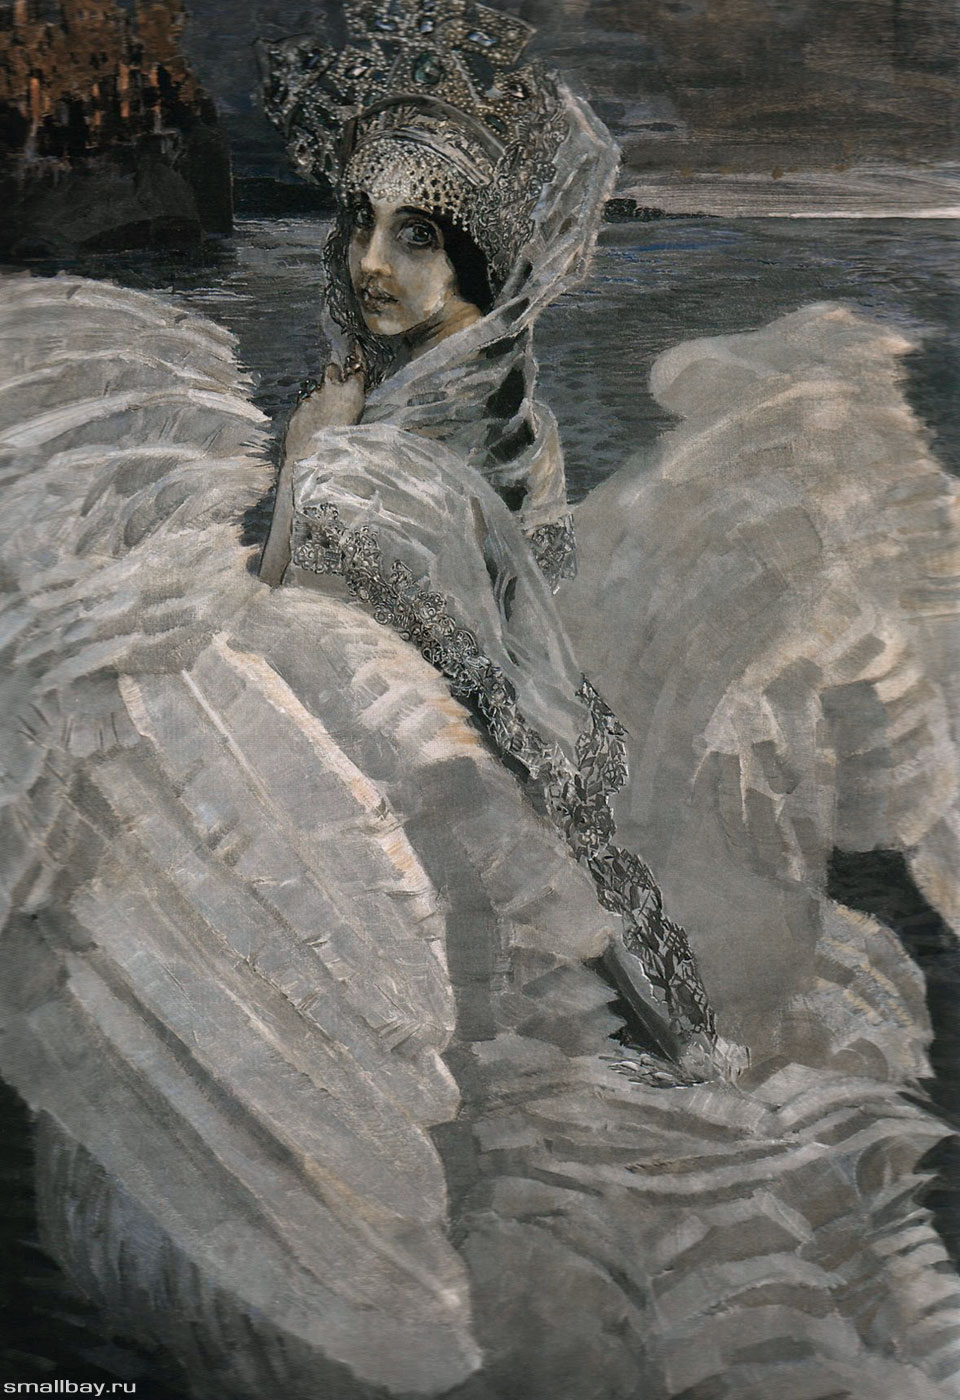 Картина «Царевна-Лебедь» Михаила Врубеля